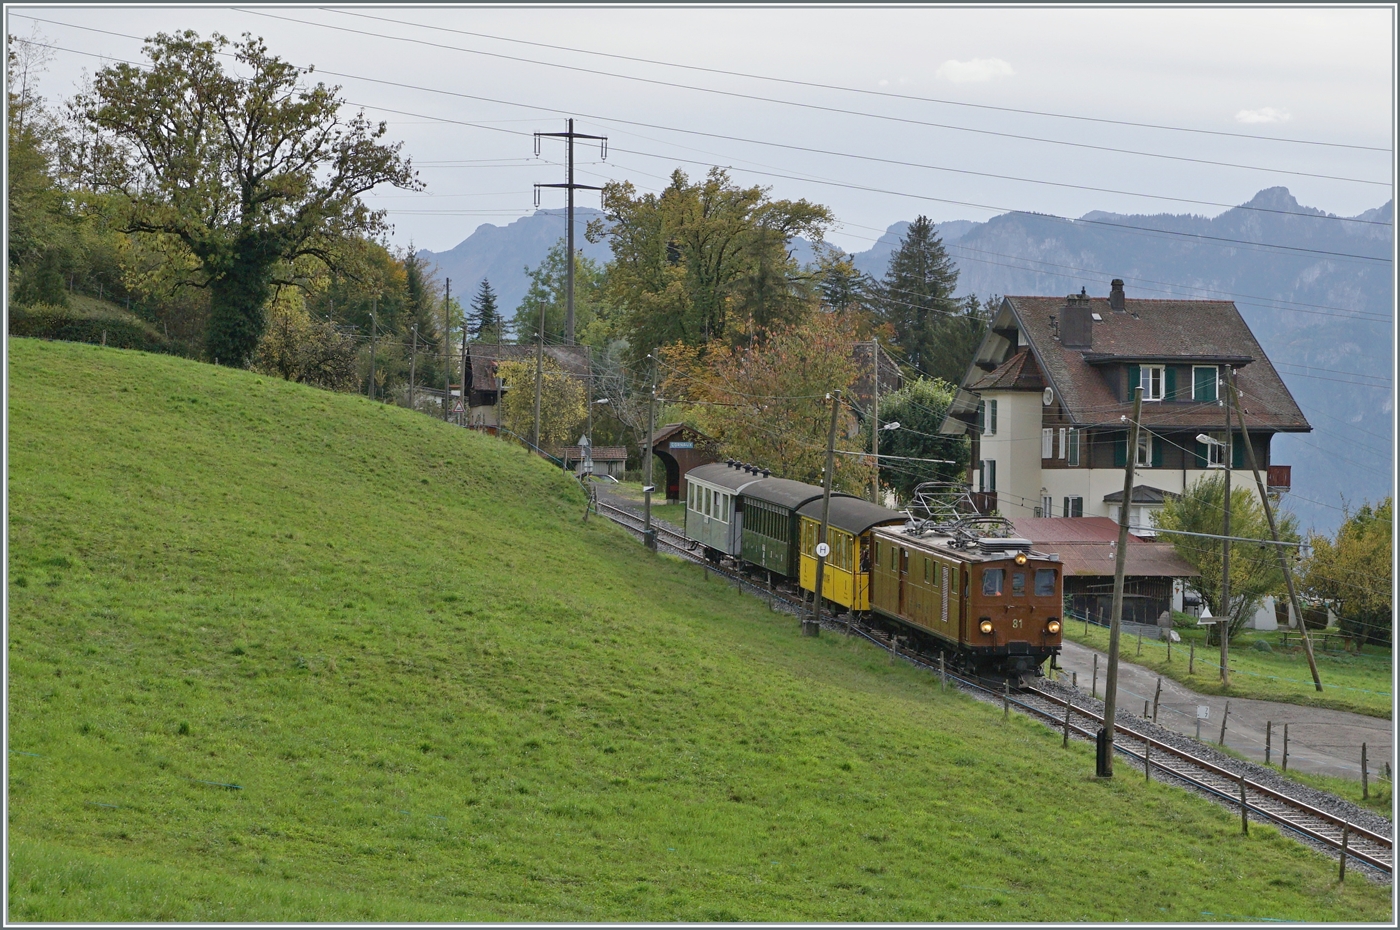  La DER de la Saison 2023  - ebenfalls bei Cornaux zeigt sich die Bernina Bahn Rhb Ge 4/4 81 der Blonay-Chamby Bahn mit dem  Velours -Express von Chaulin nach Vevey. Gleich hinter dem Zug ist die Haltstelle Cornaux zu erkennen. 


29. Okt. 2023